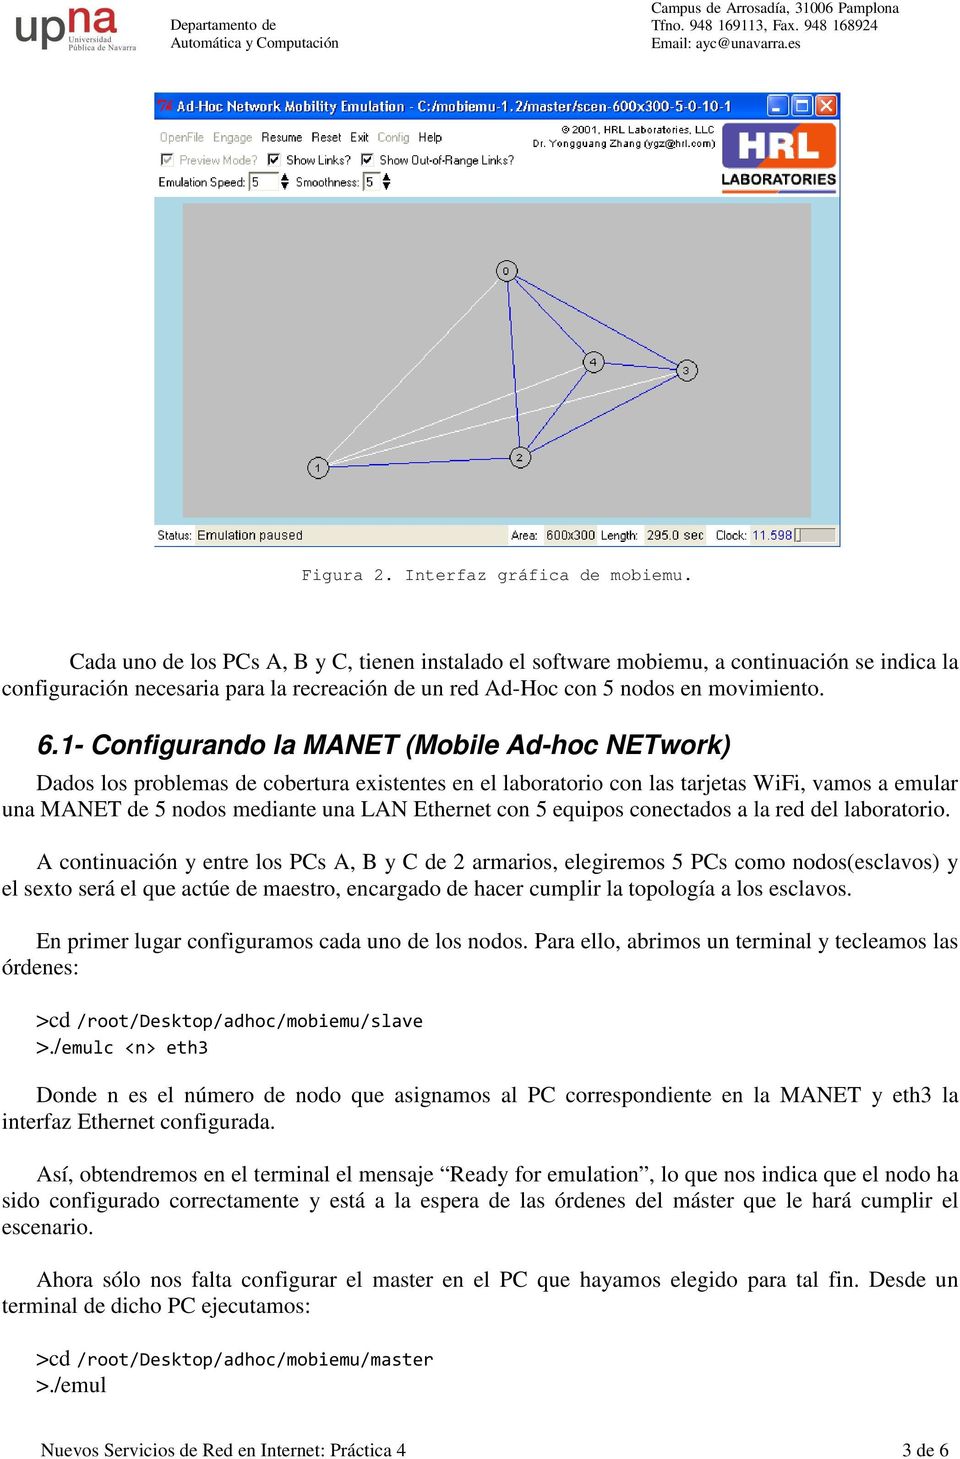 1- Configurando la MANET (Mobile Ad-hoc NETwork) Dados los problemas de cobertura existentes en el laboratorio con las tarjetas WiFi, vamos a emular una MANET de 5 nodos mediante una LAN Ethernet con